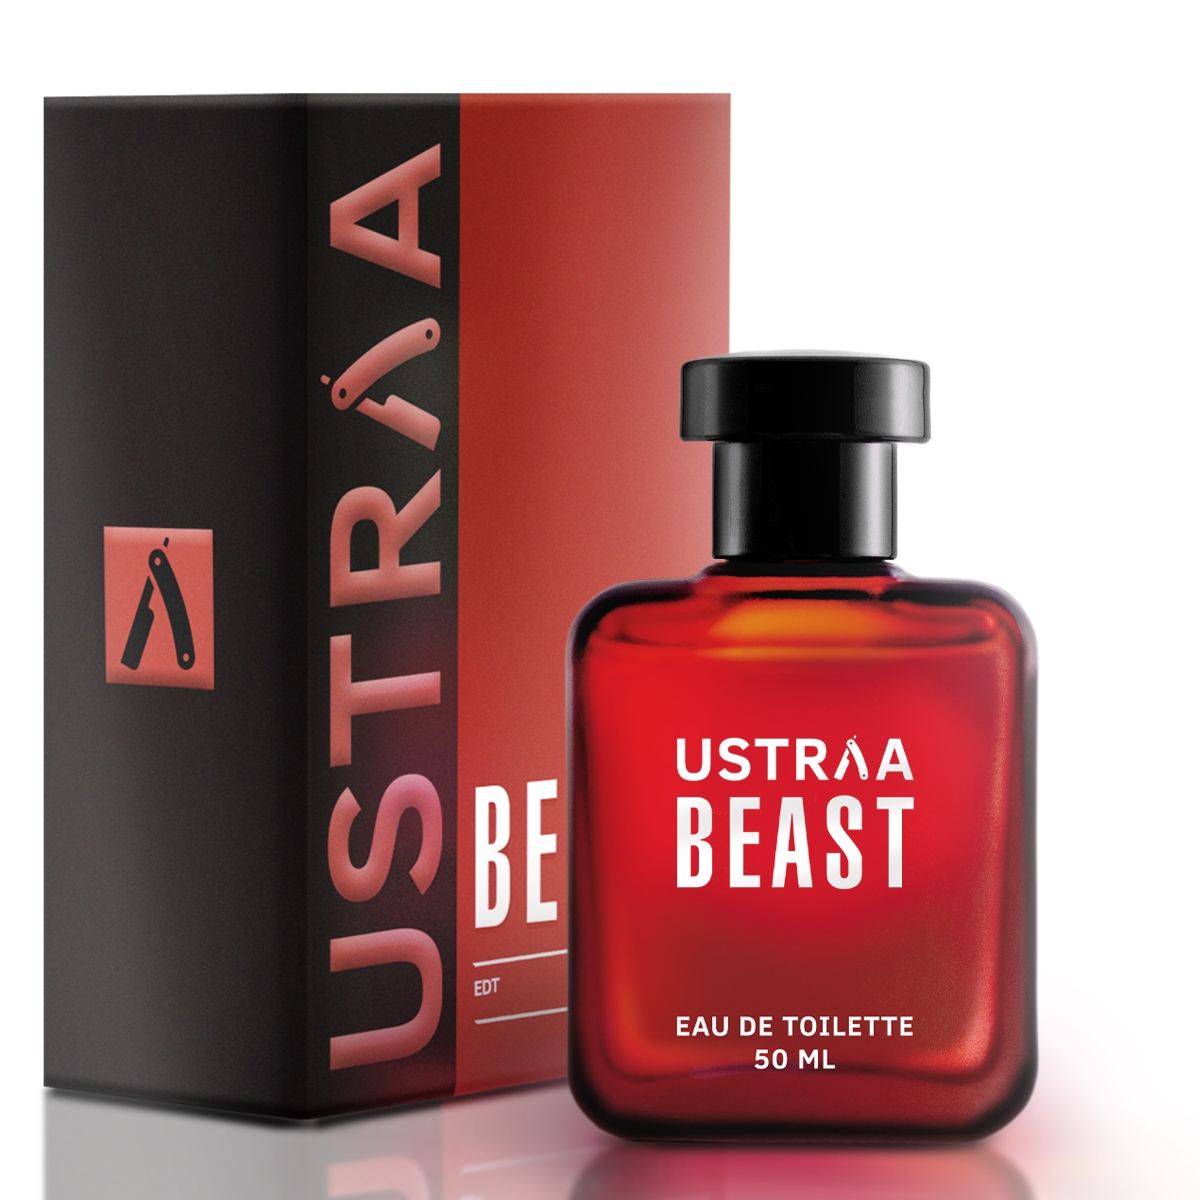 Ustraa | Ustraa Beast EDT 50ml - Perfume for Men 1